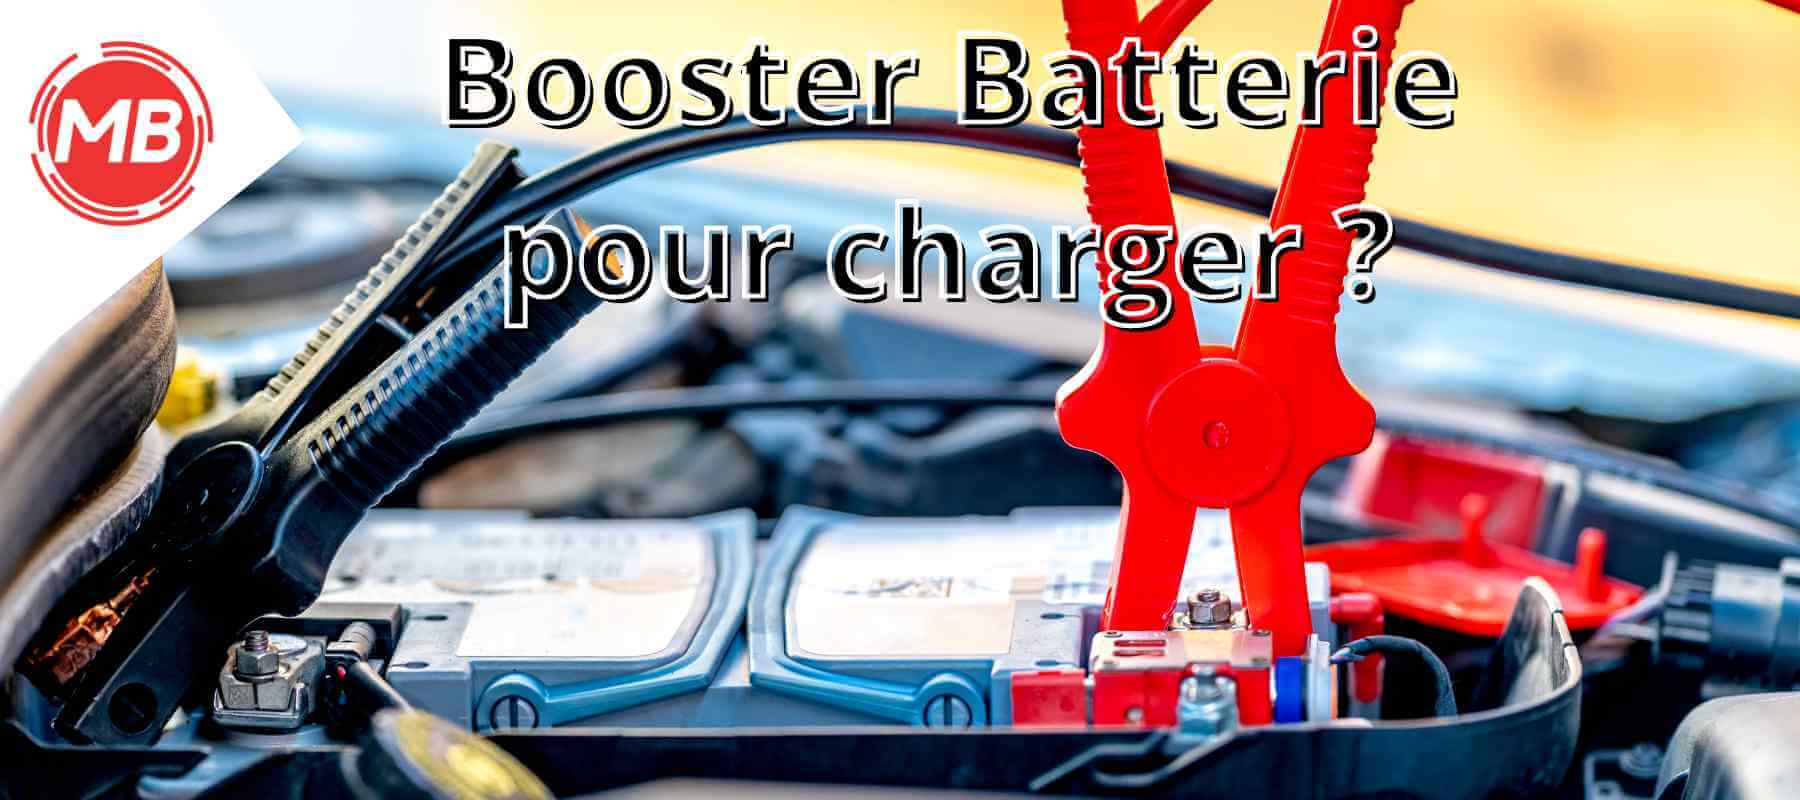 est ce qu'un booster batterie peut charger une batterie magic booster